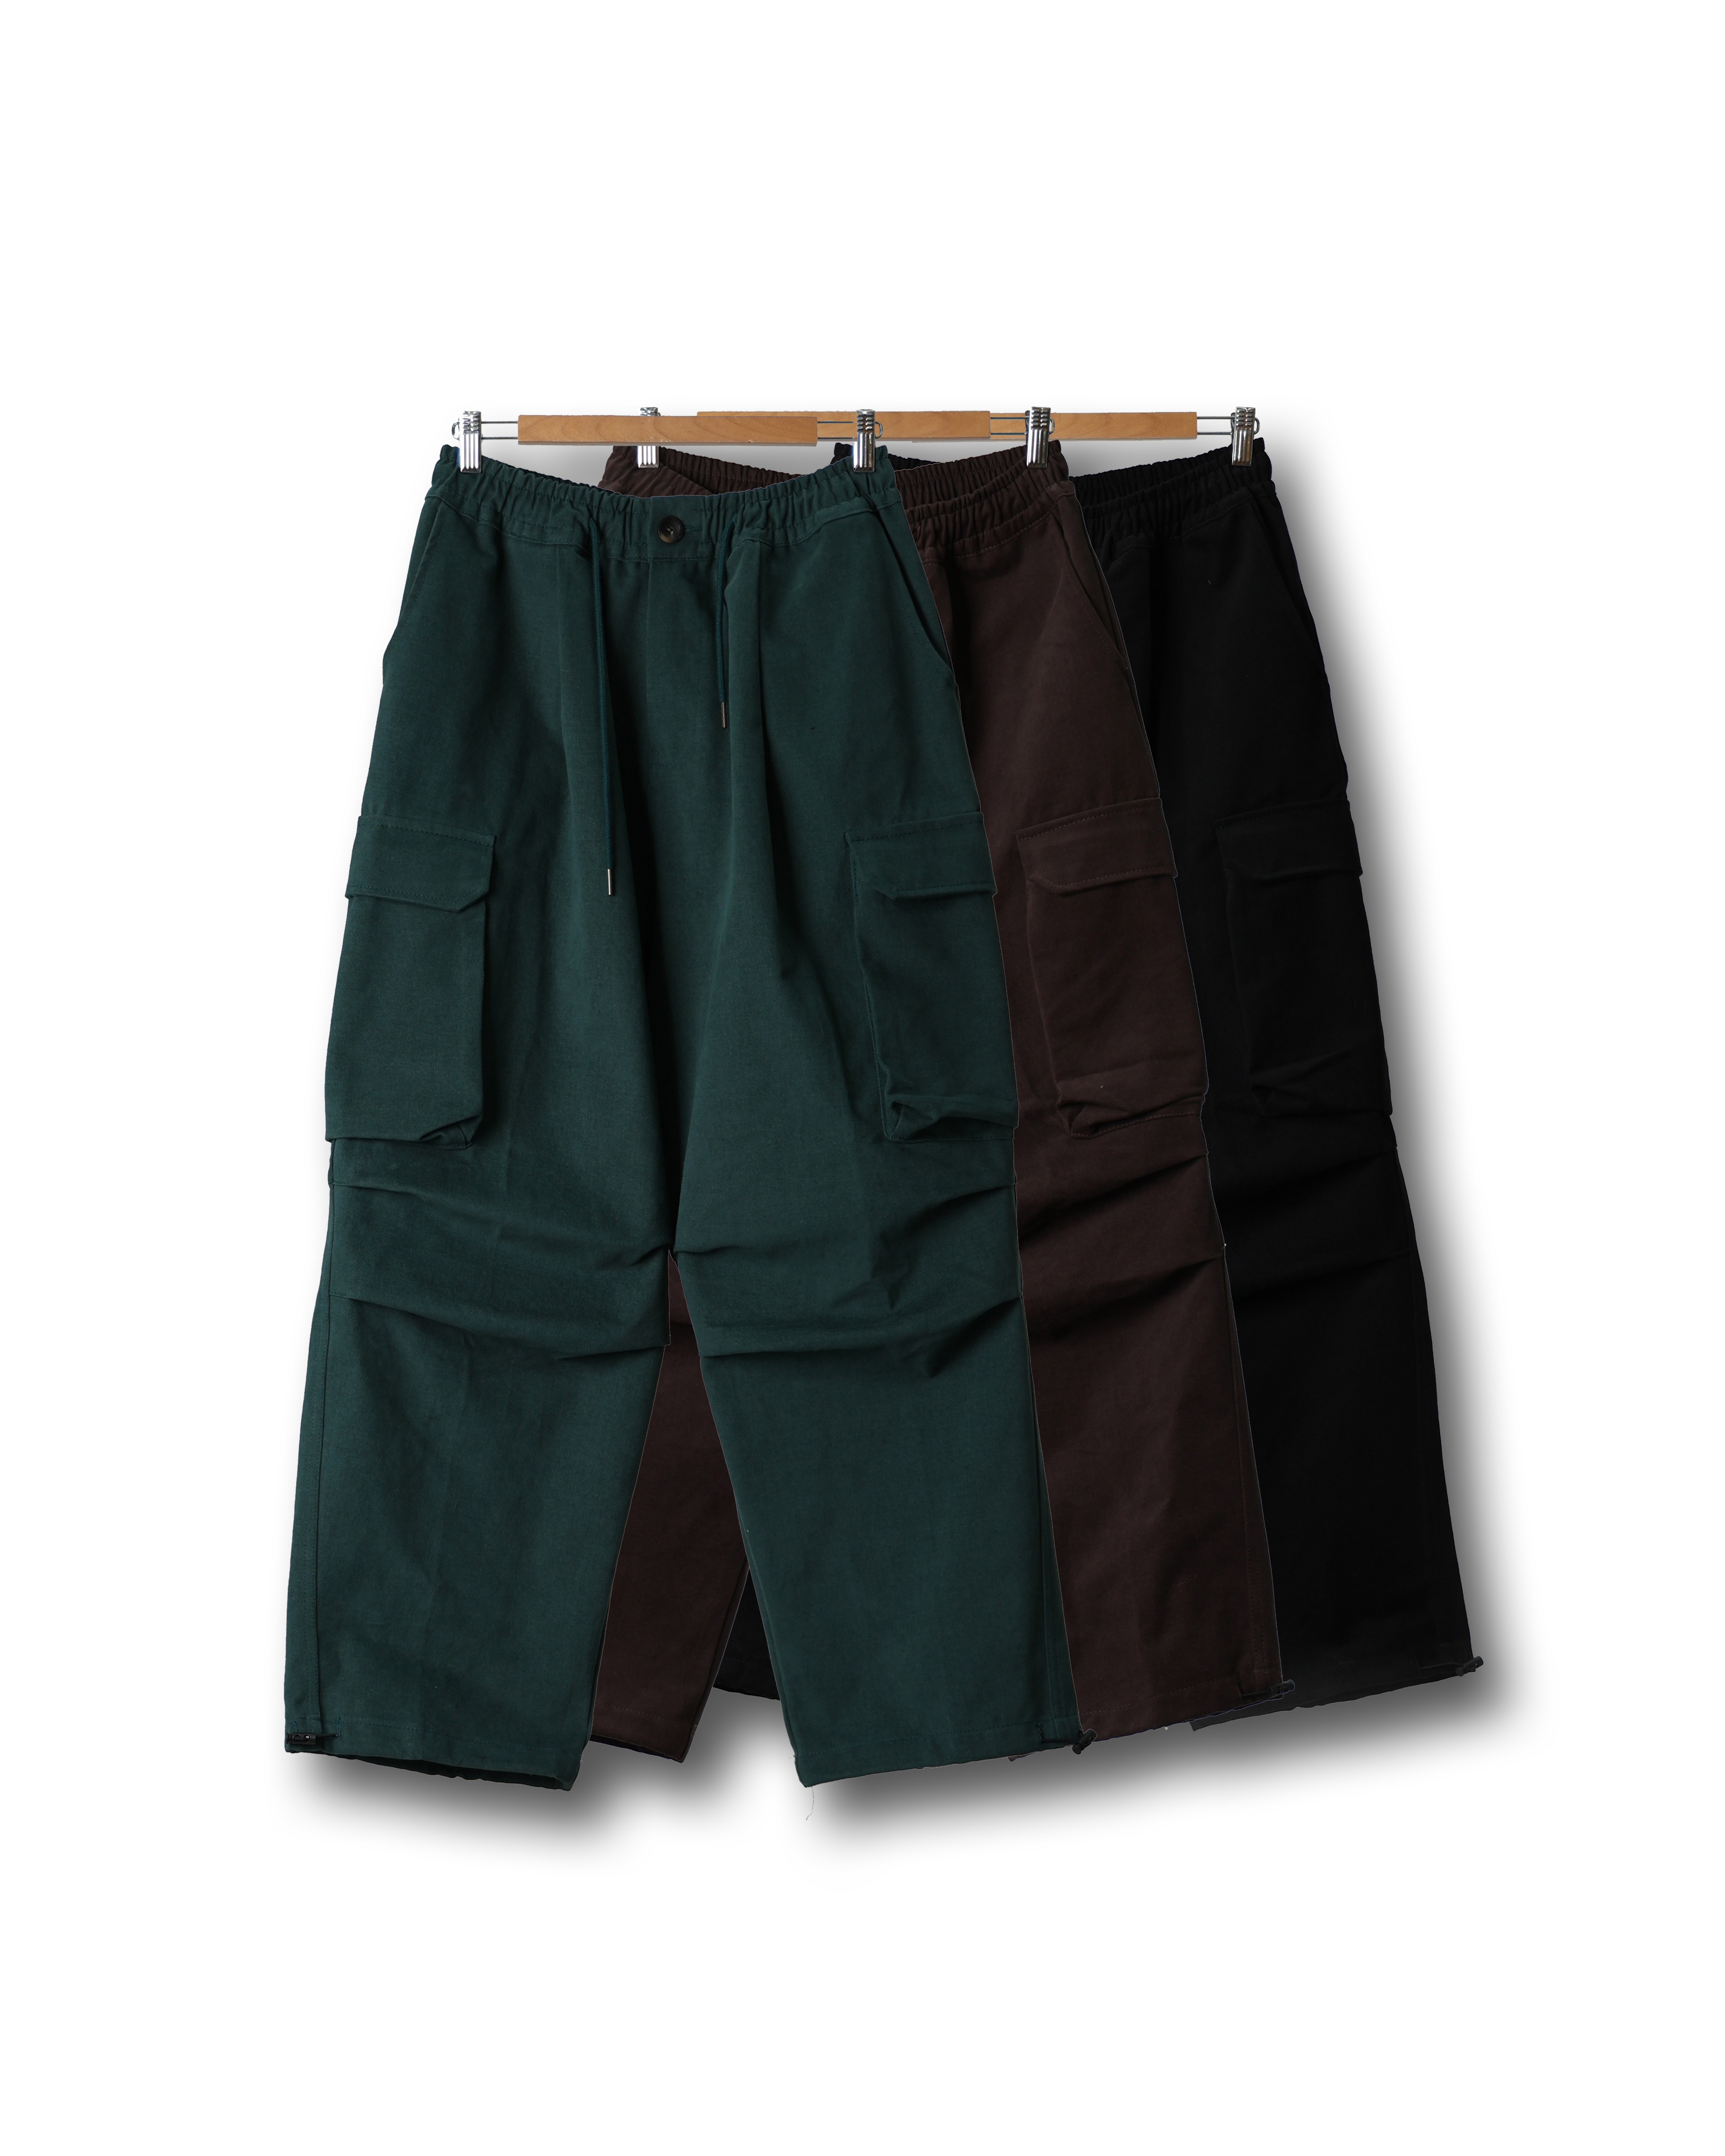 CONS Peach Cargo Maxi Balloon Pants (Black/Brown/Green)